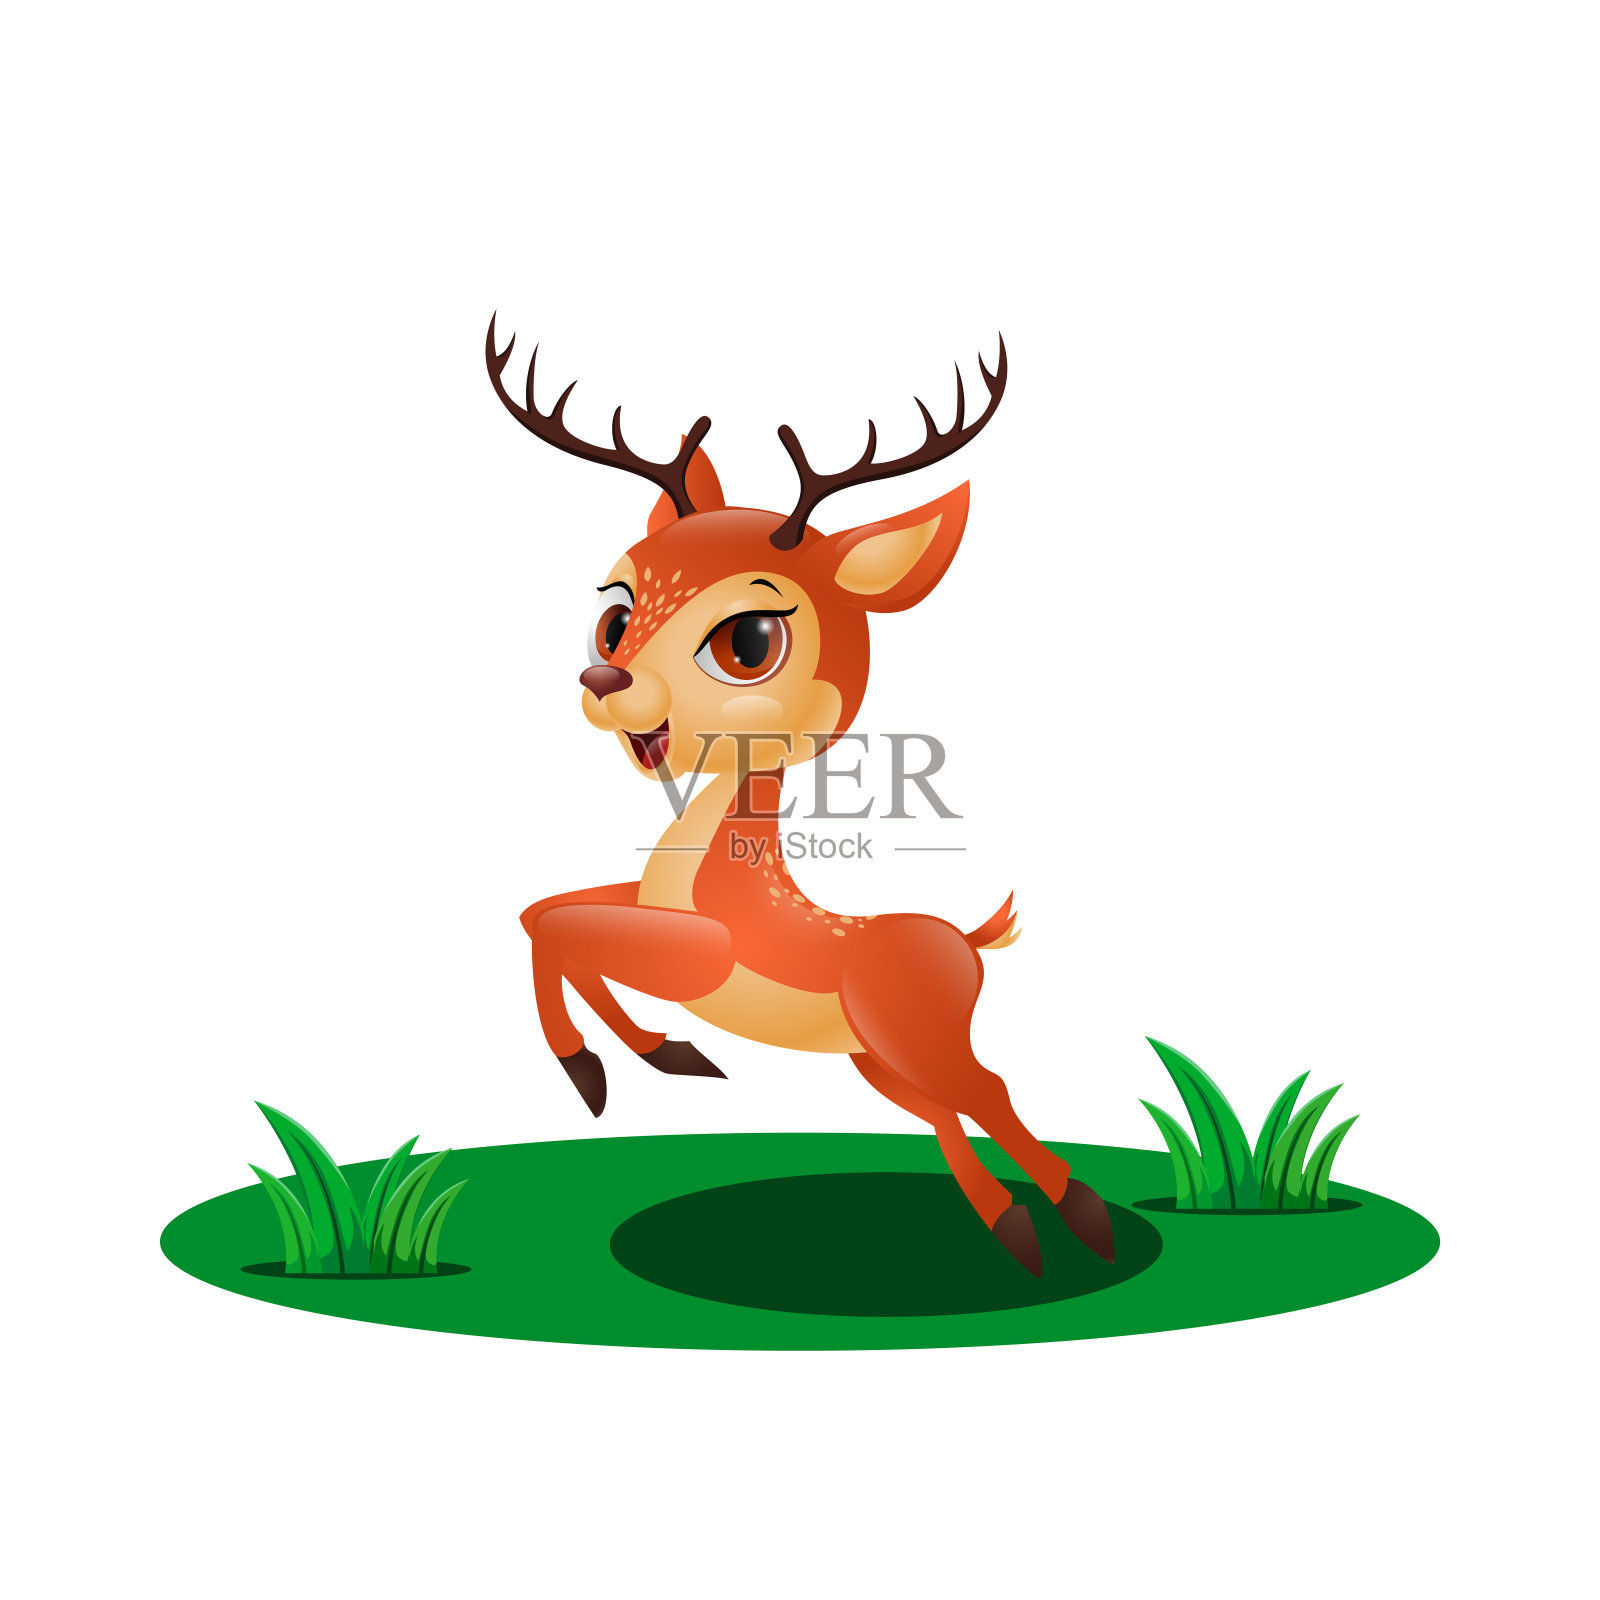 可爱的小鹿在草丛中跳跃设计元素图片